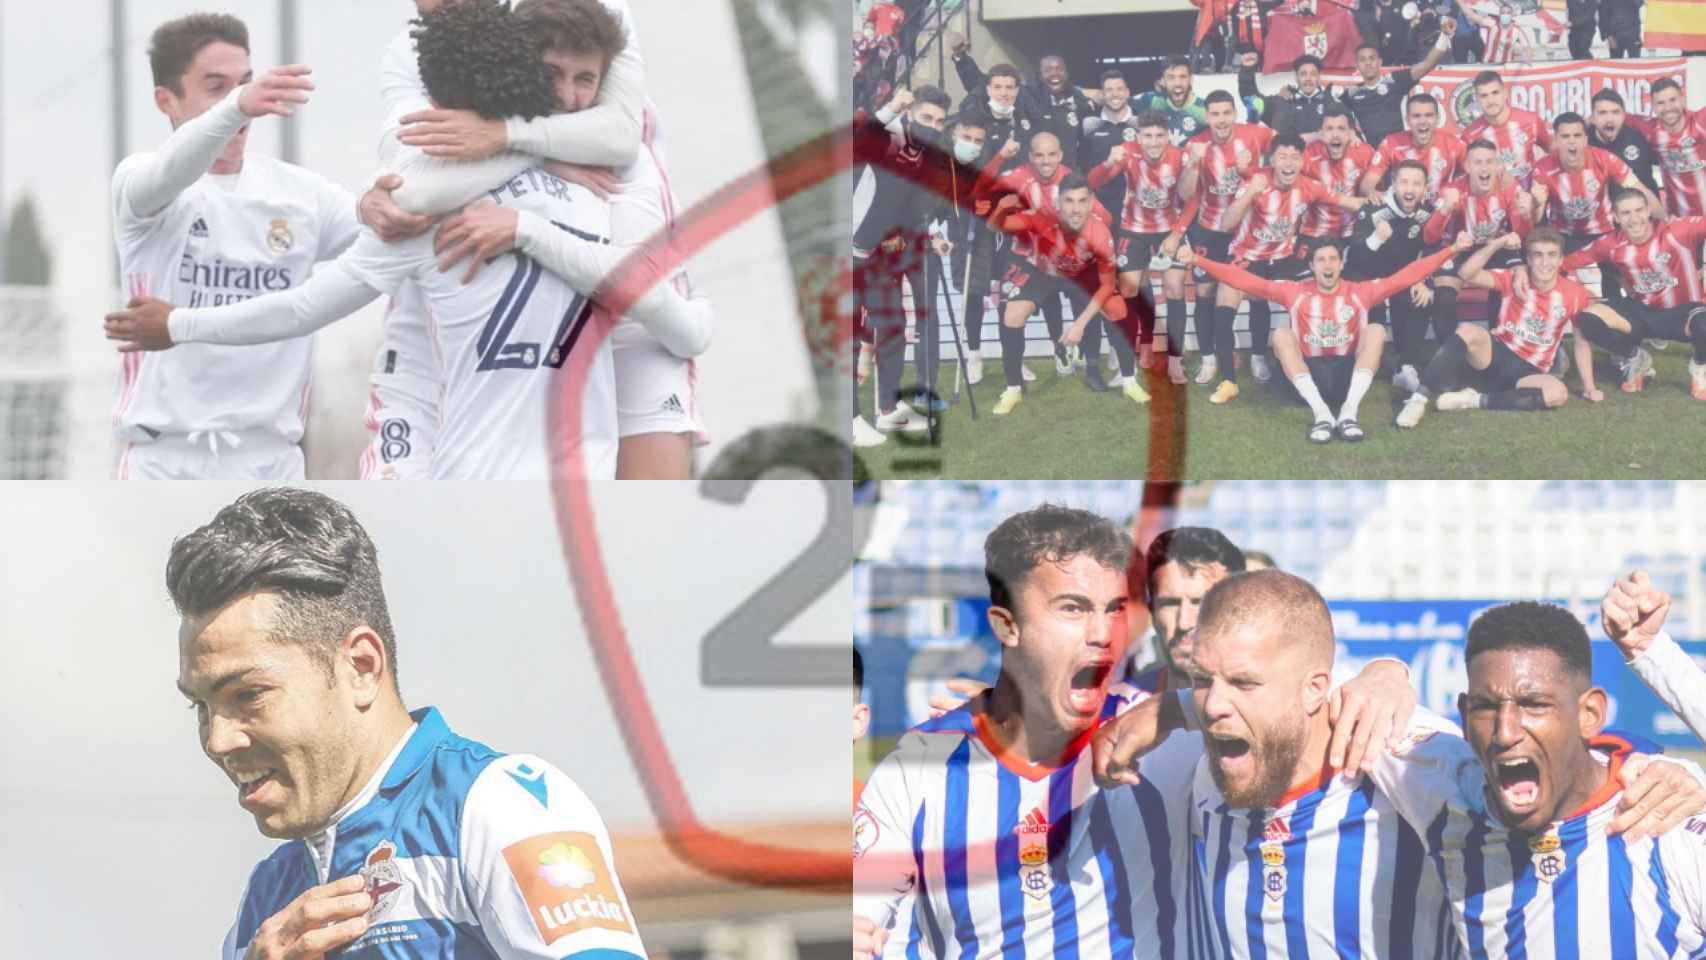 El Real Madrid Castilla, el Zamora CF, el Deportivo de La Coruña y el Recreativo de Huelva celebrando victorias en un fotomontaje con el logo de la Segunda B